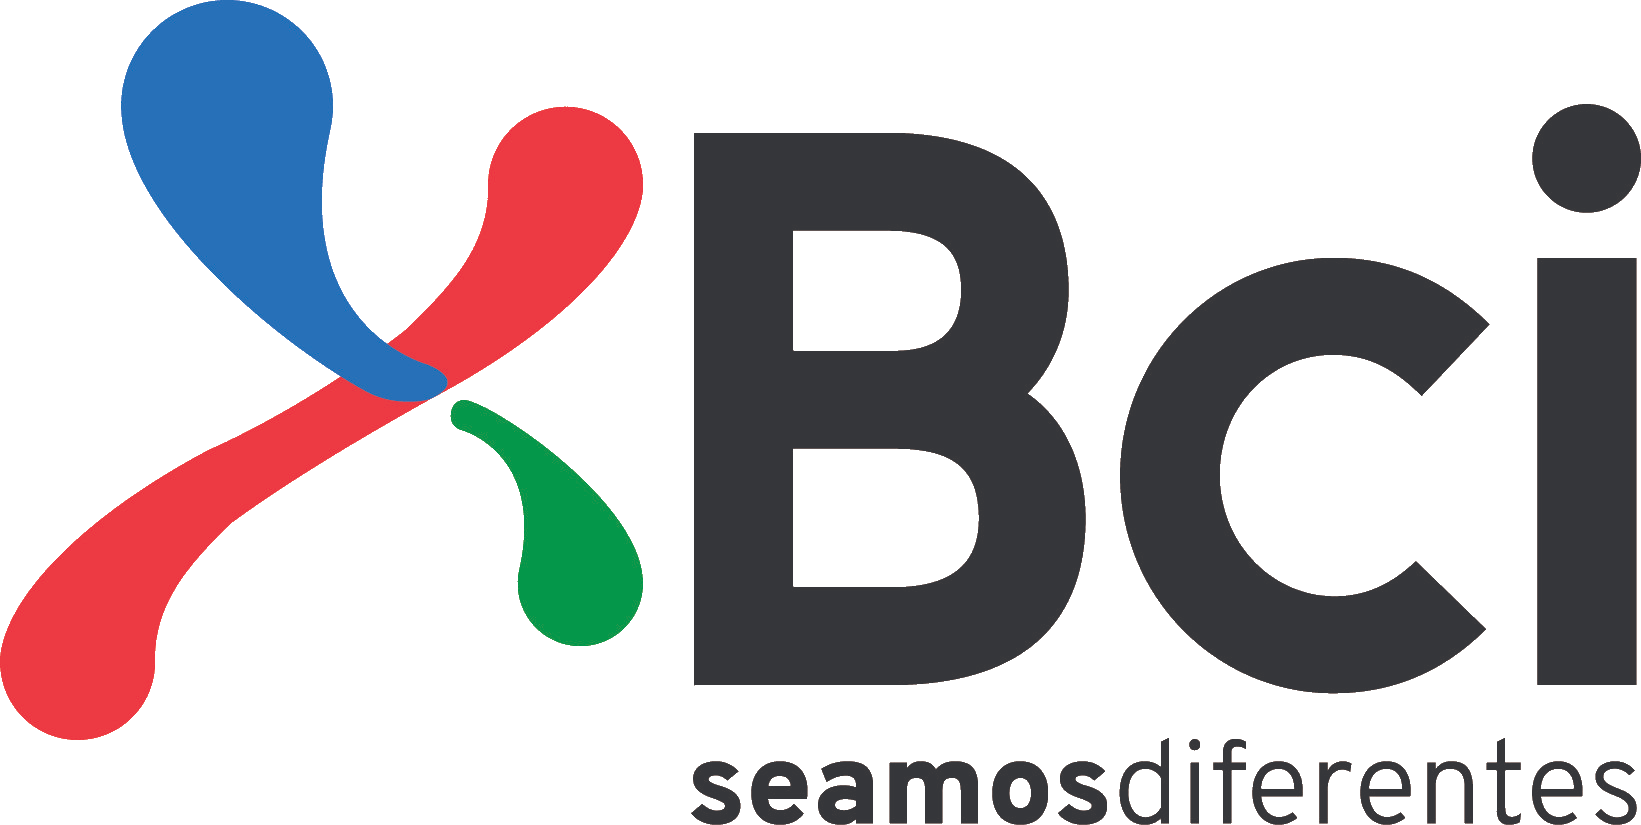 Logotipo de Bci, cliente de CMS Hub